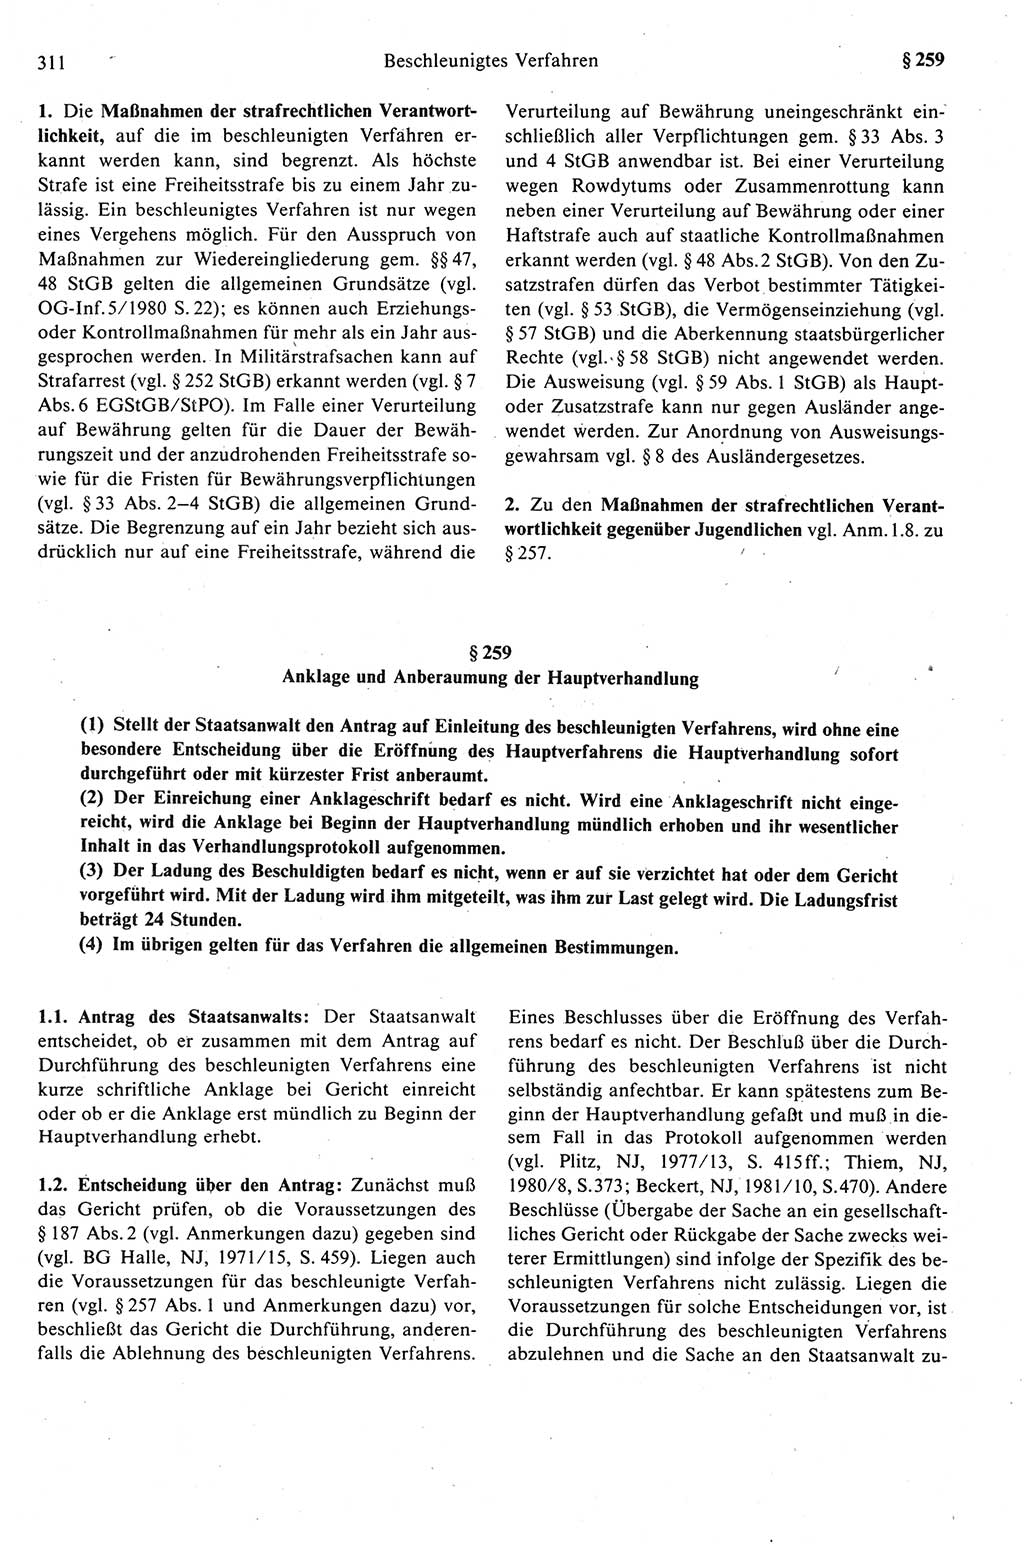 Strafprozeßrecht der DDR (Deutsche Demokratische Republik), Kommentar zur Strafprozeßordnung (StPO) 1989, Seite 311 (Strafprozeßr. DDR Komm. StPO 1989, S. 311)